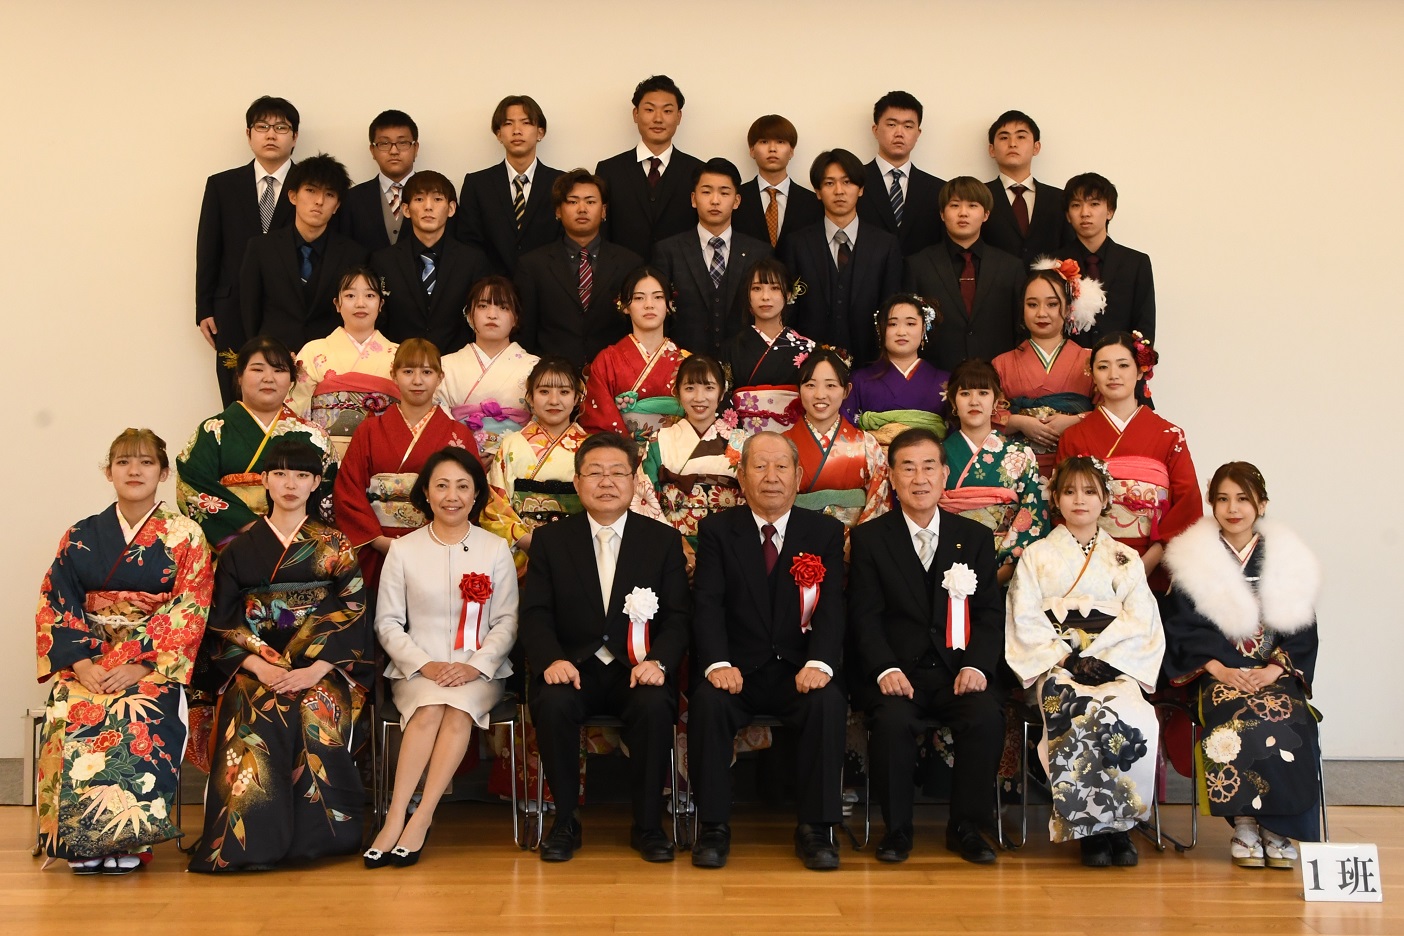 脇本小・鶴川内小校区の新成人の皆さんと西平市長らの写真